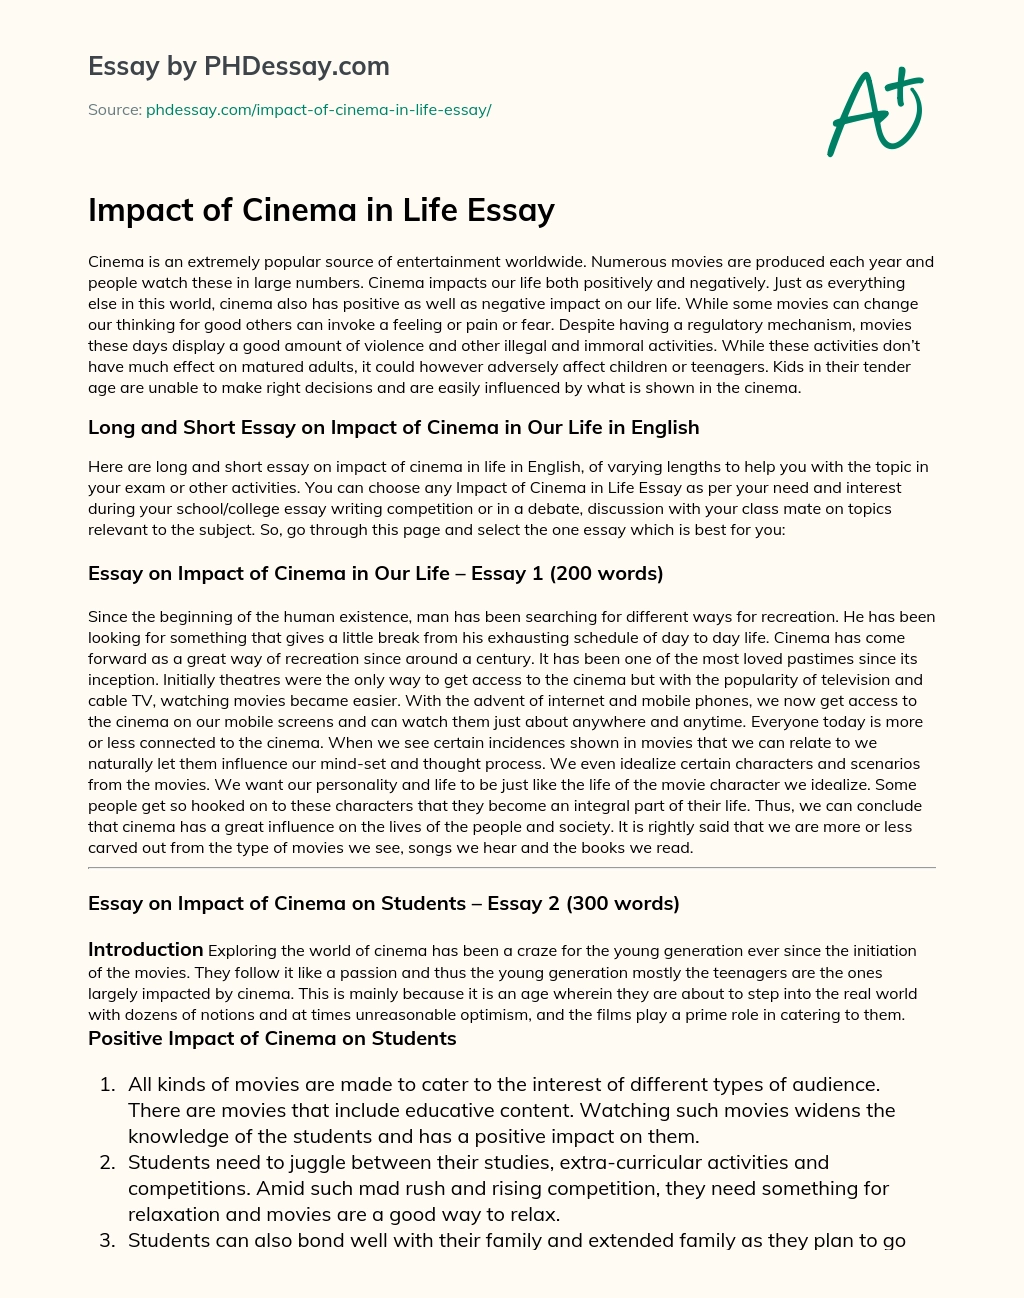 Impact of Cinema in Life Essay essay